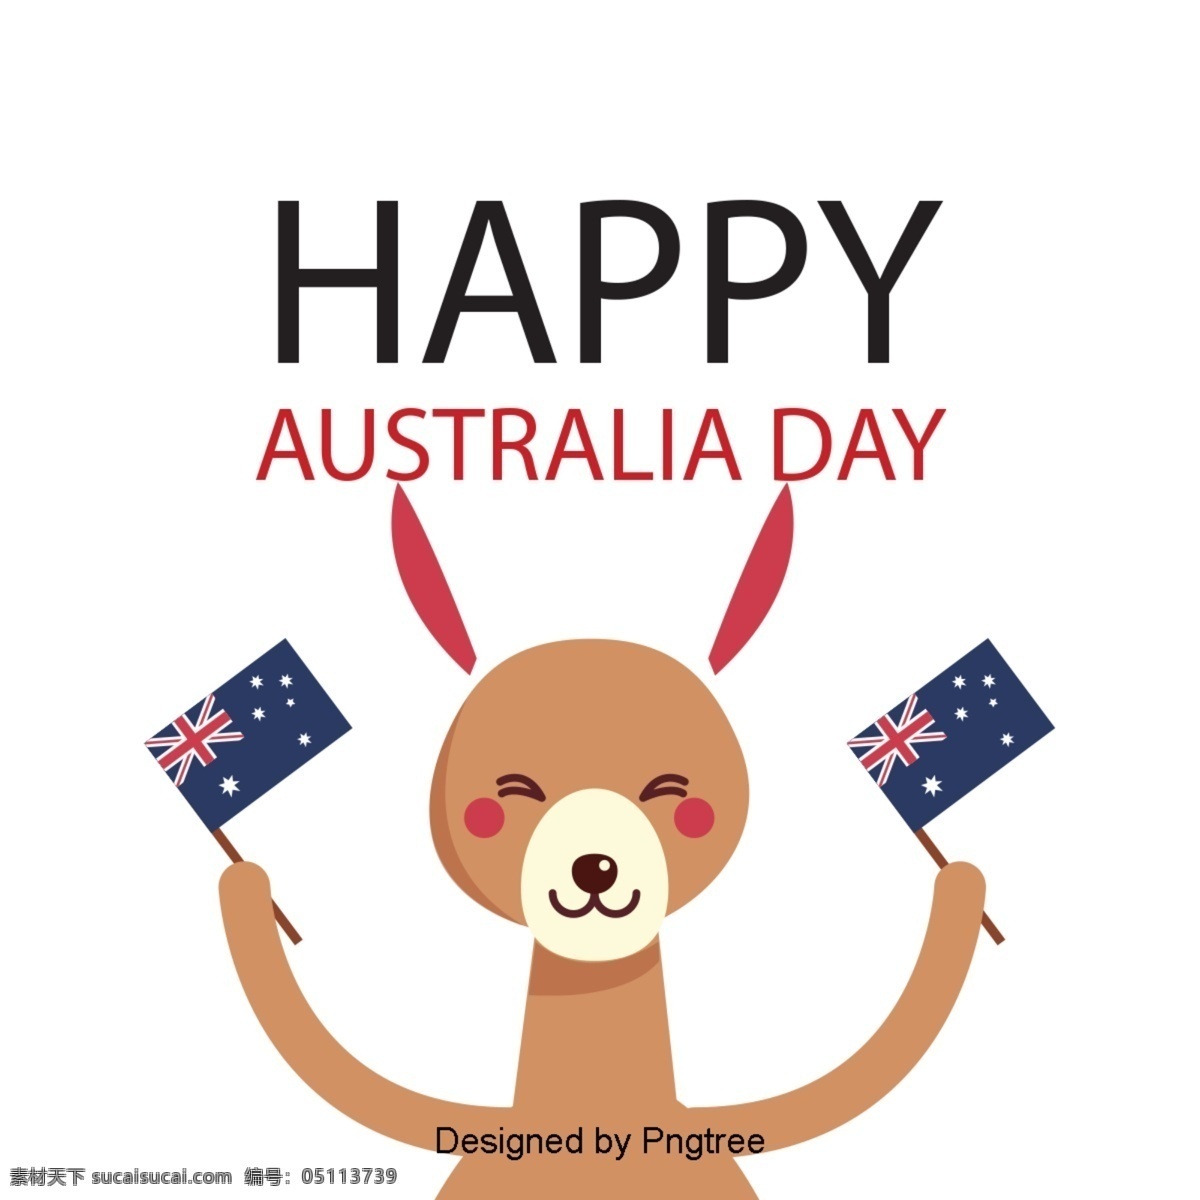 澳大利亚 国旗 旗帜 袋鼠 字体 澳大利亚日